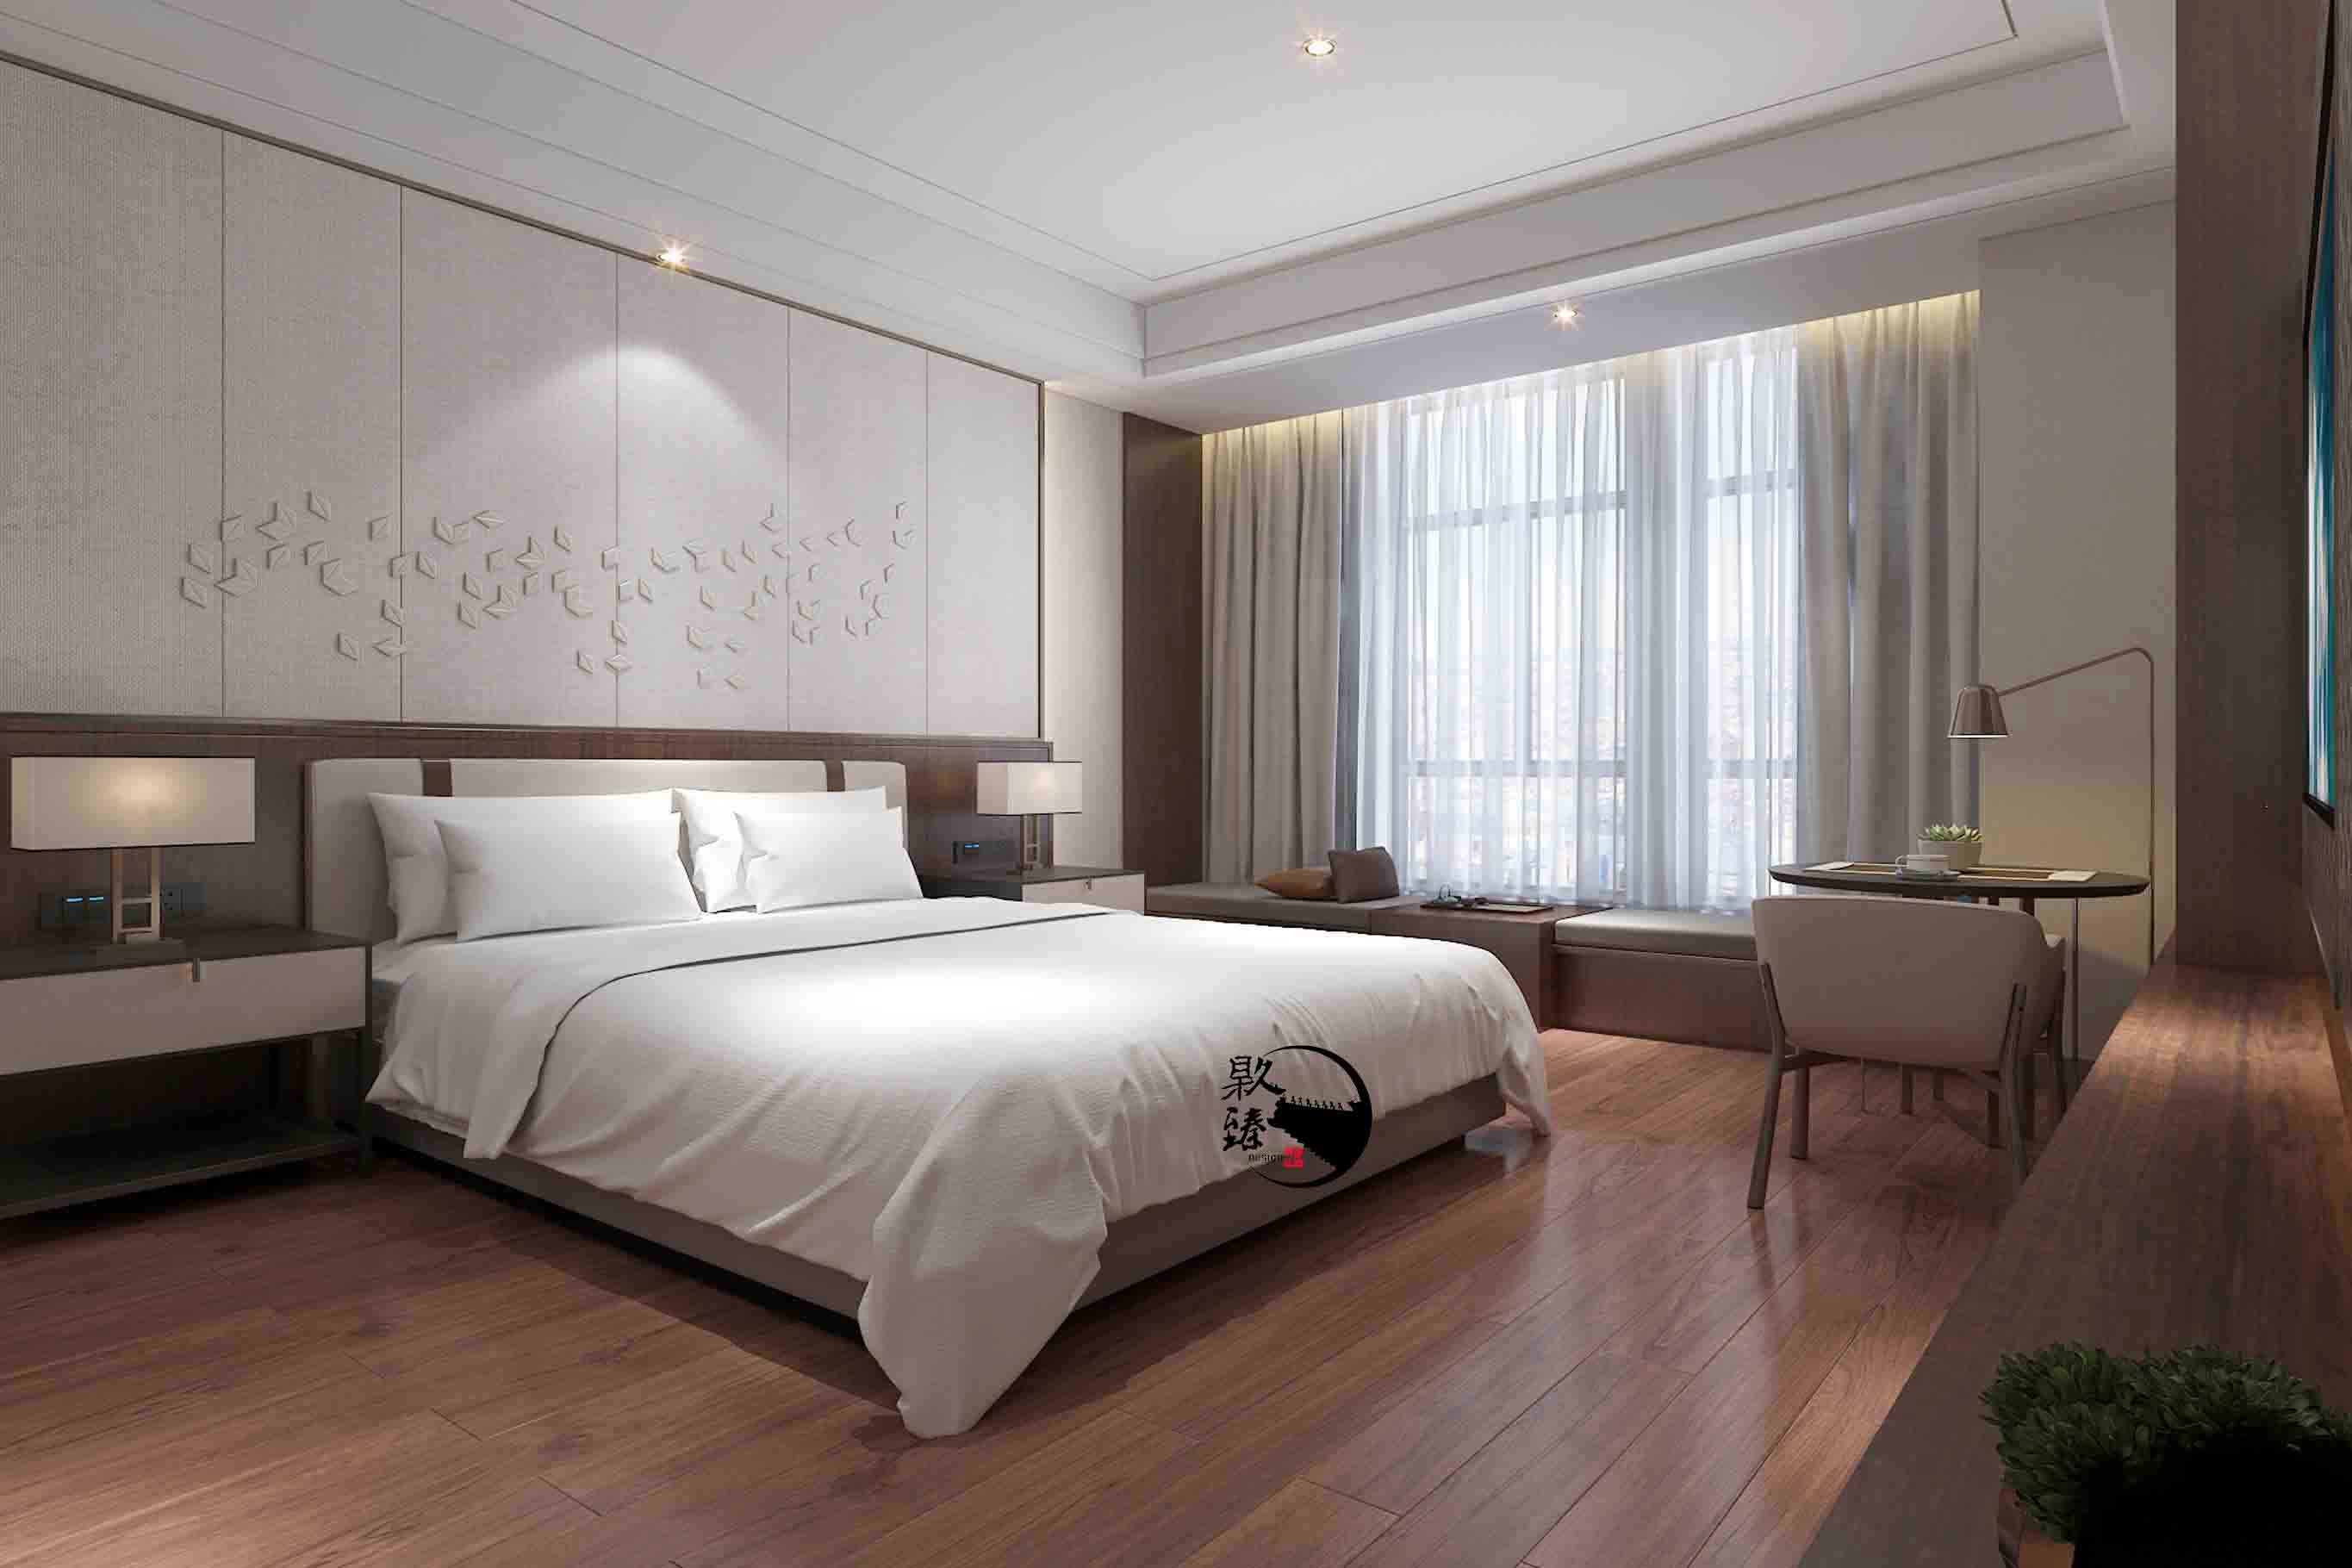 隆德米素酒店设计|满足客户对舒适和安静的需求